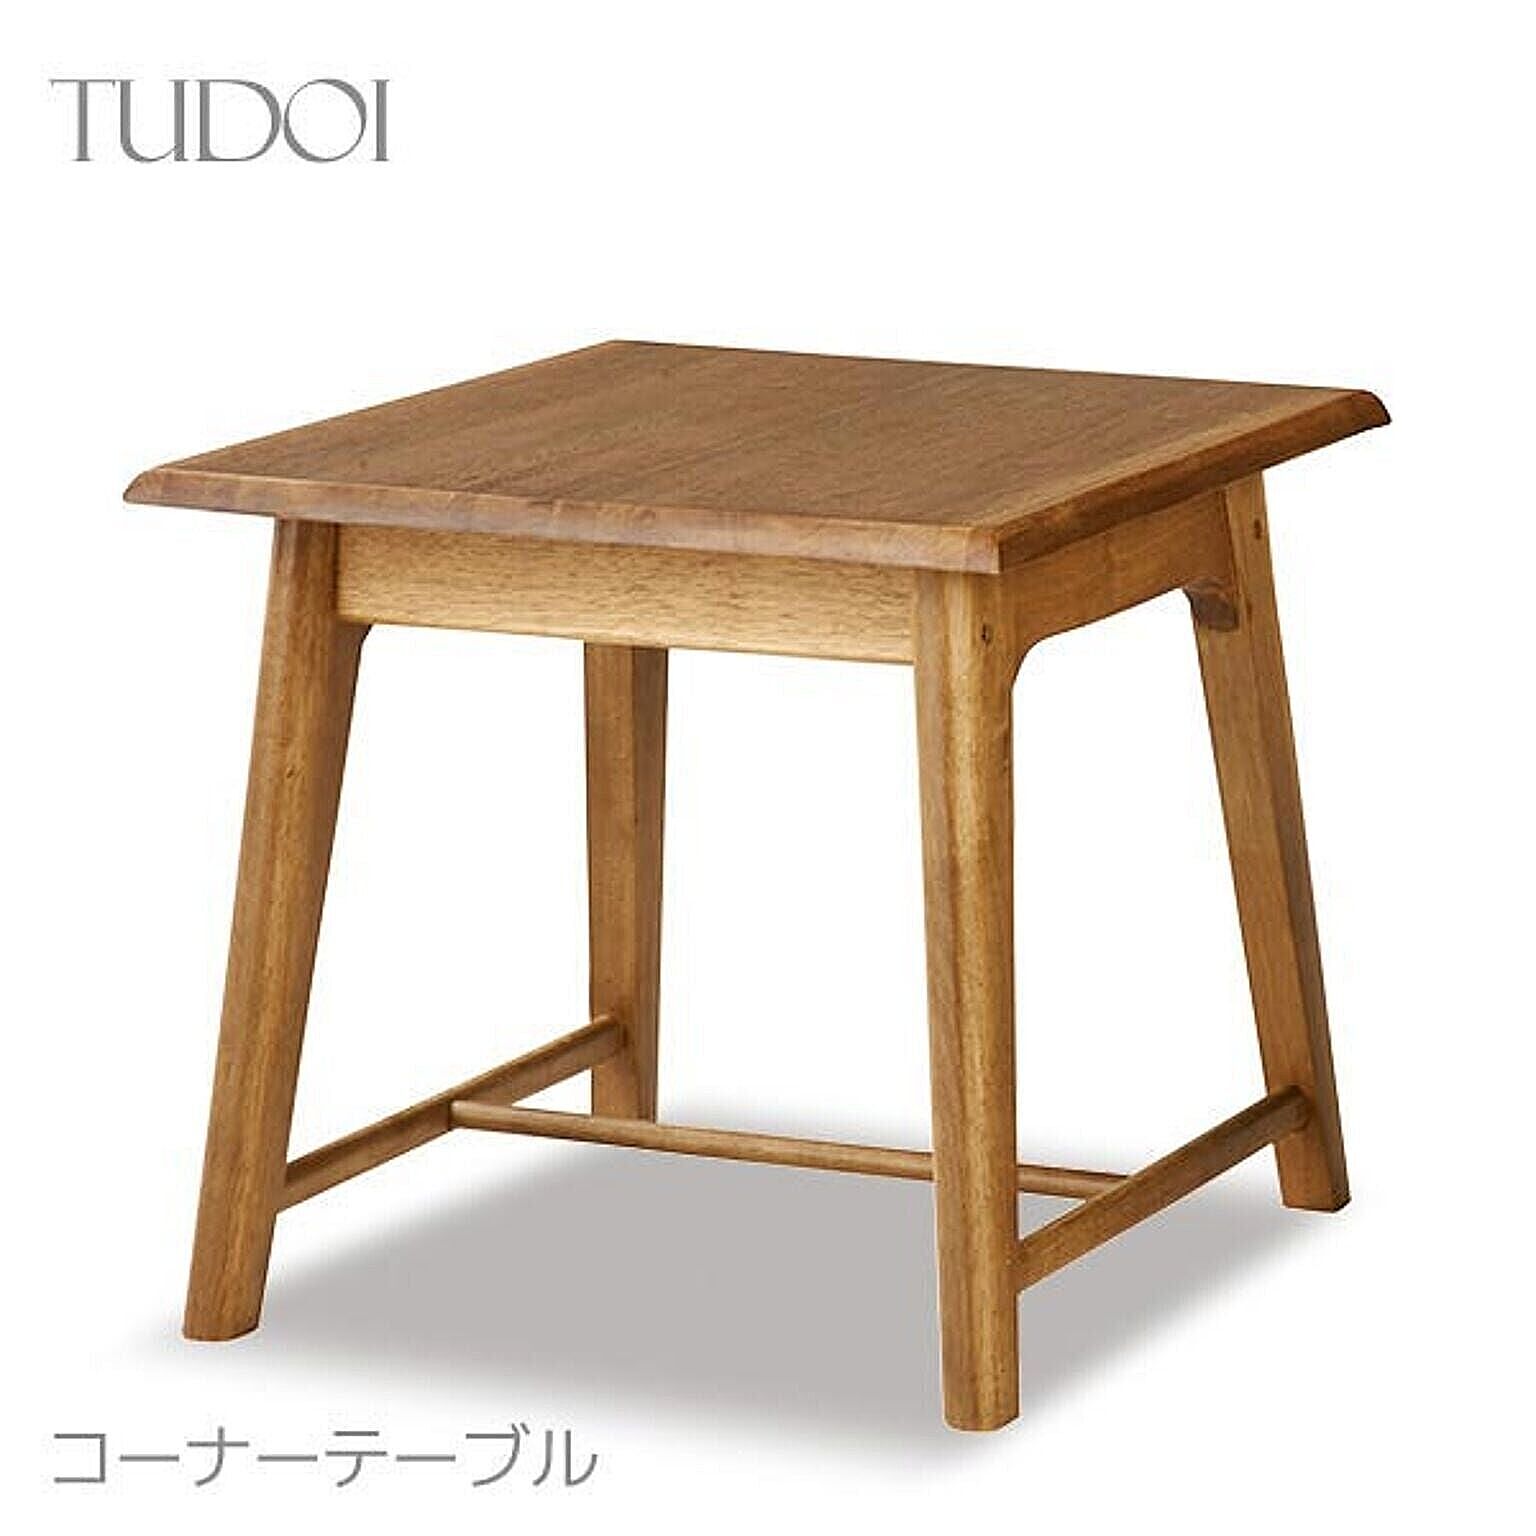 サイドテーブル コーナーテーブル 幅60cm 高さ55cm 組立品 正方形 木製 和テイスト ナチュラル シンプル 集い つどい